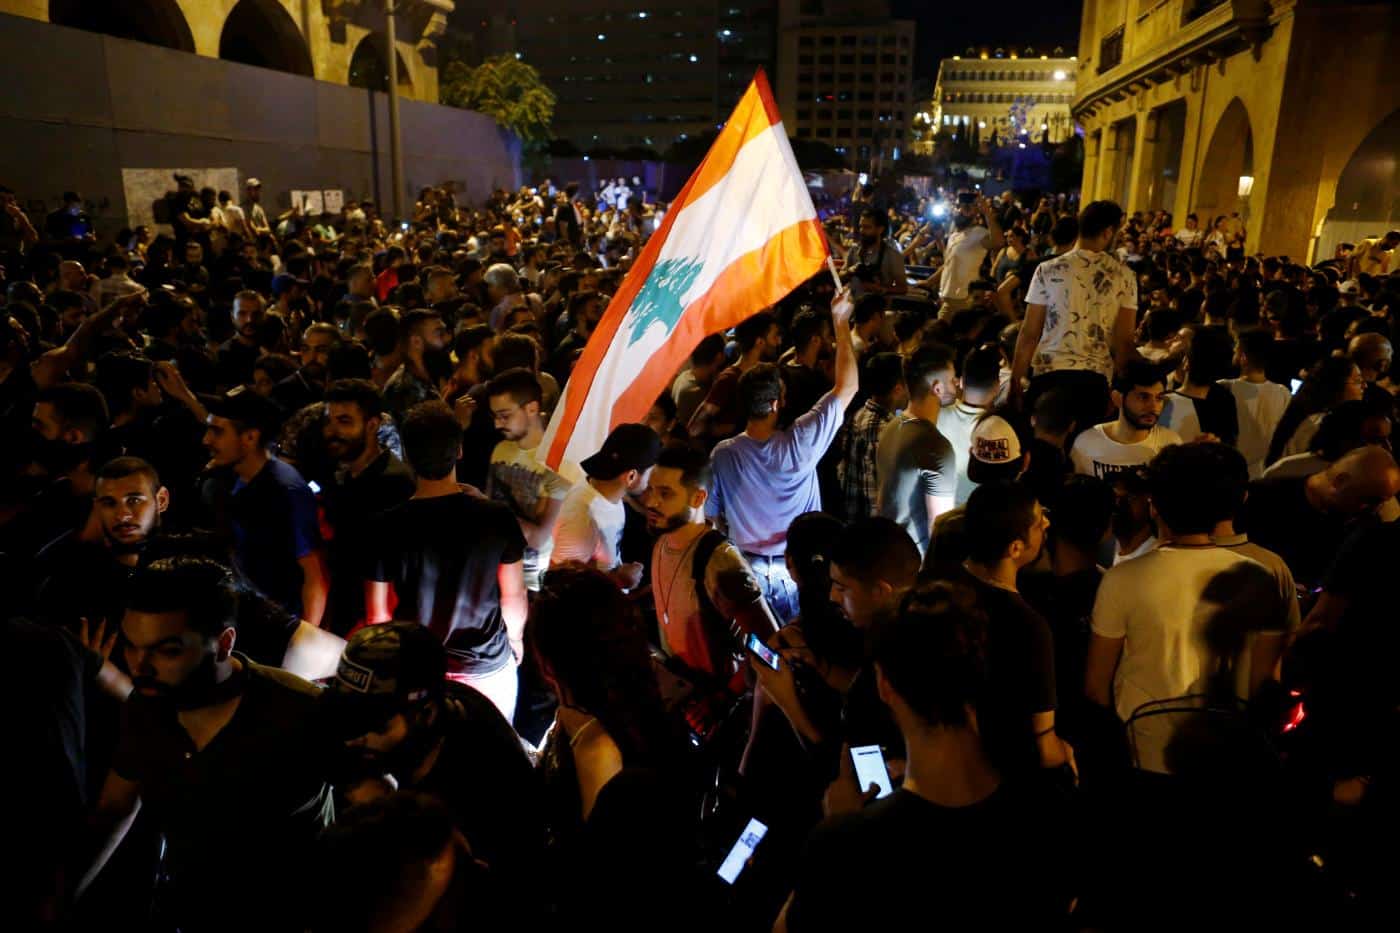 Le proteste in Libano vanno oltre WhatsApp